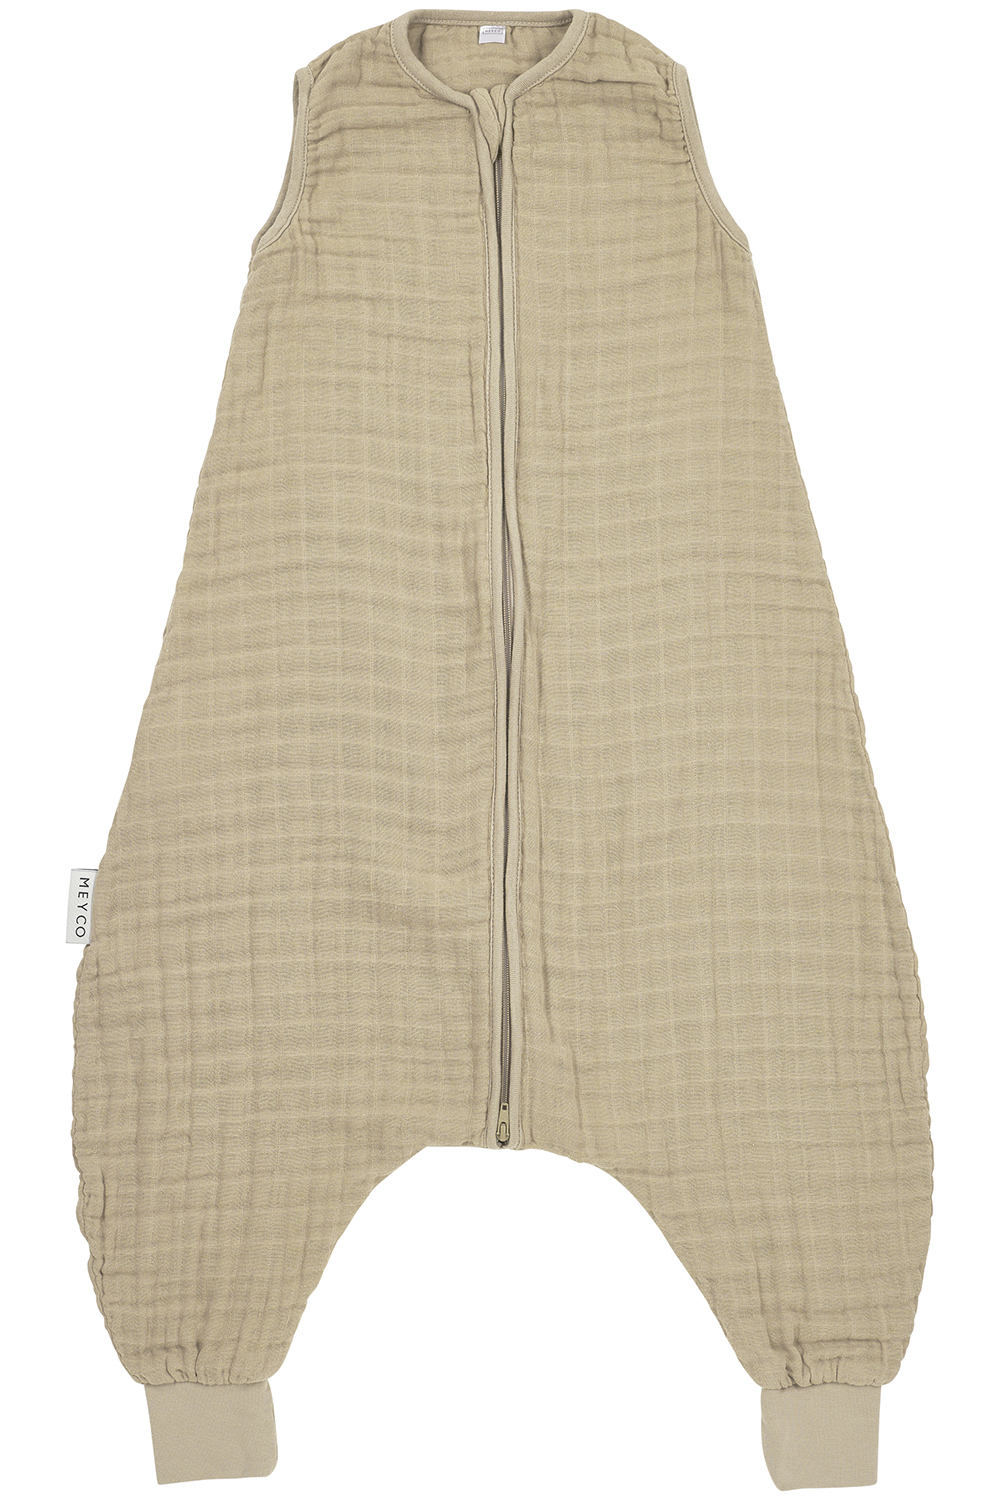 Baby zomer slaapoverall jumper pre-washed hydrofiel Uni - sand - 92cm